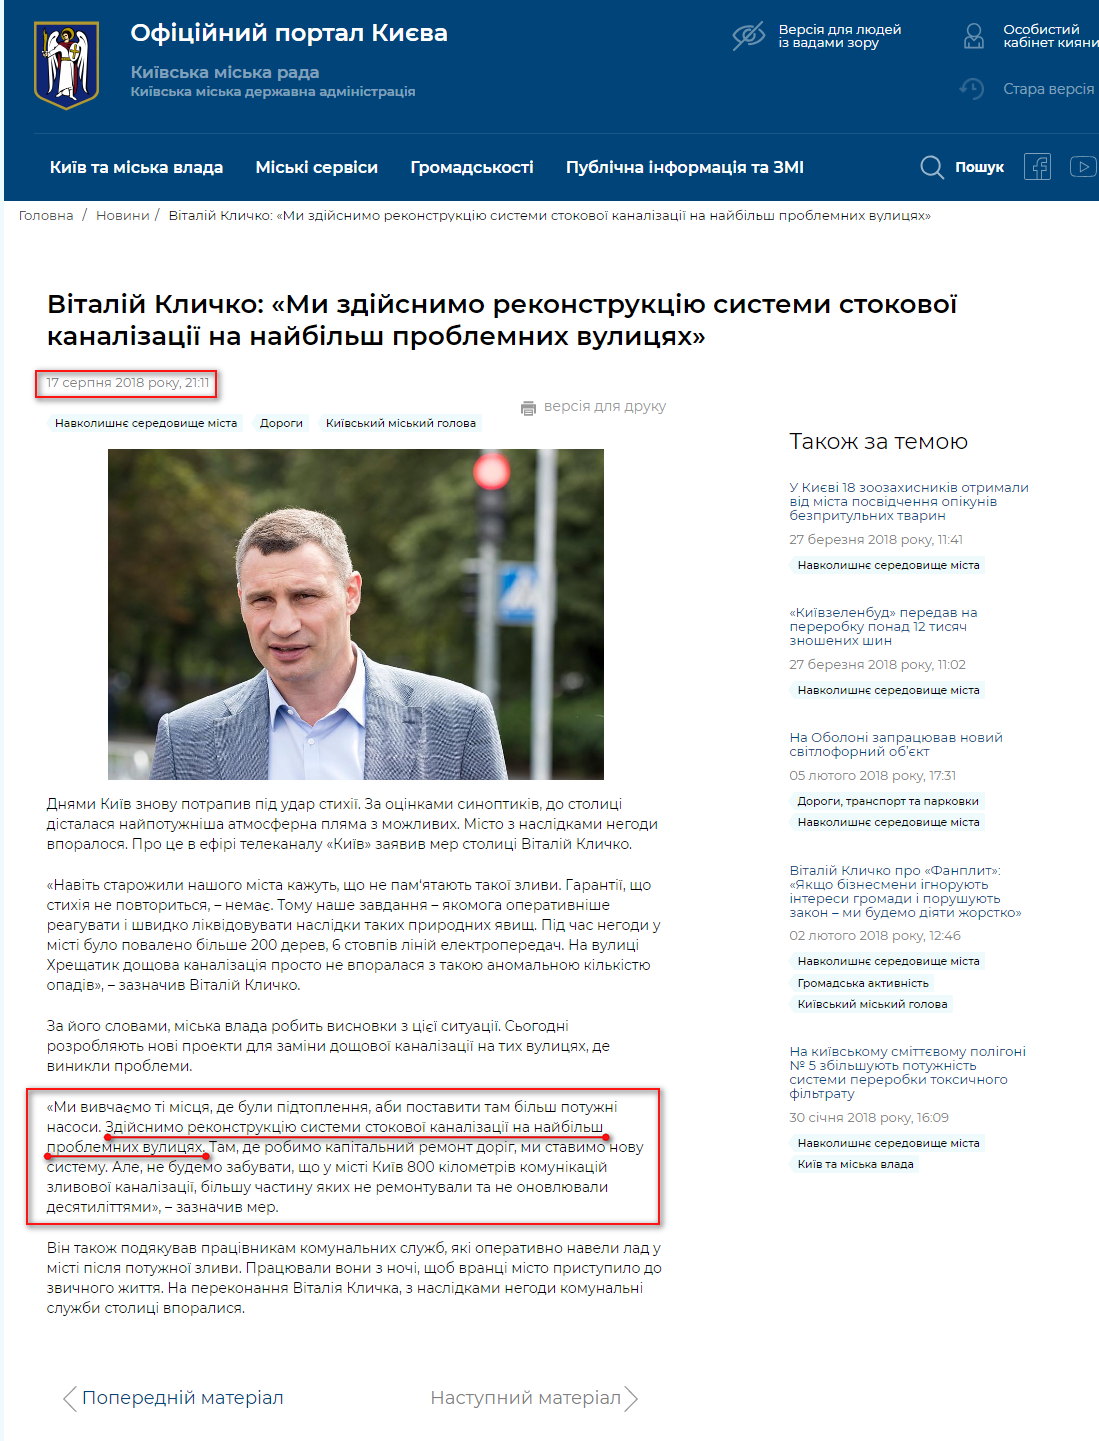 https://kyivcity.gov.ua/news/vitaliy_klichko_mi_zdiysnimo_rekonstruktsiyu_sistemi_stokovo_kanalizatsi_na_naybilsh_problemnikh_vulitsyakh.html